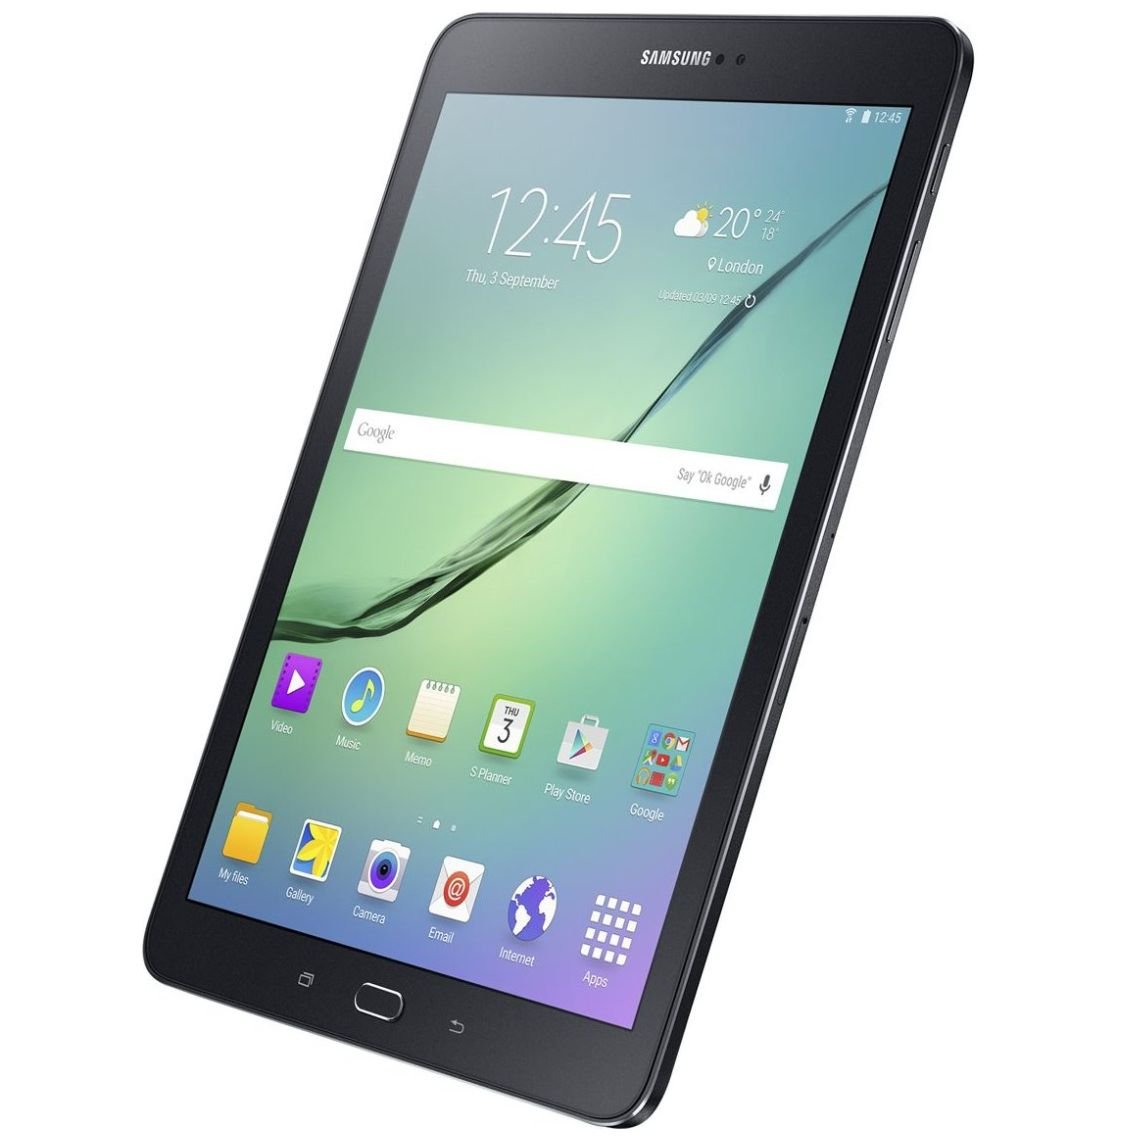 Galaxy Tab S2 Ve 9.7'' Negra 3Gb Ram Cámara 8Mp + 2.1 Mp